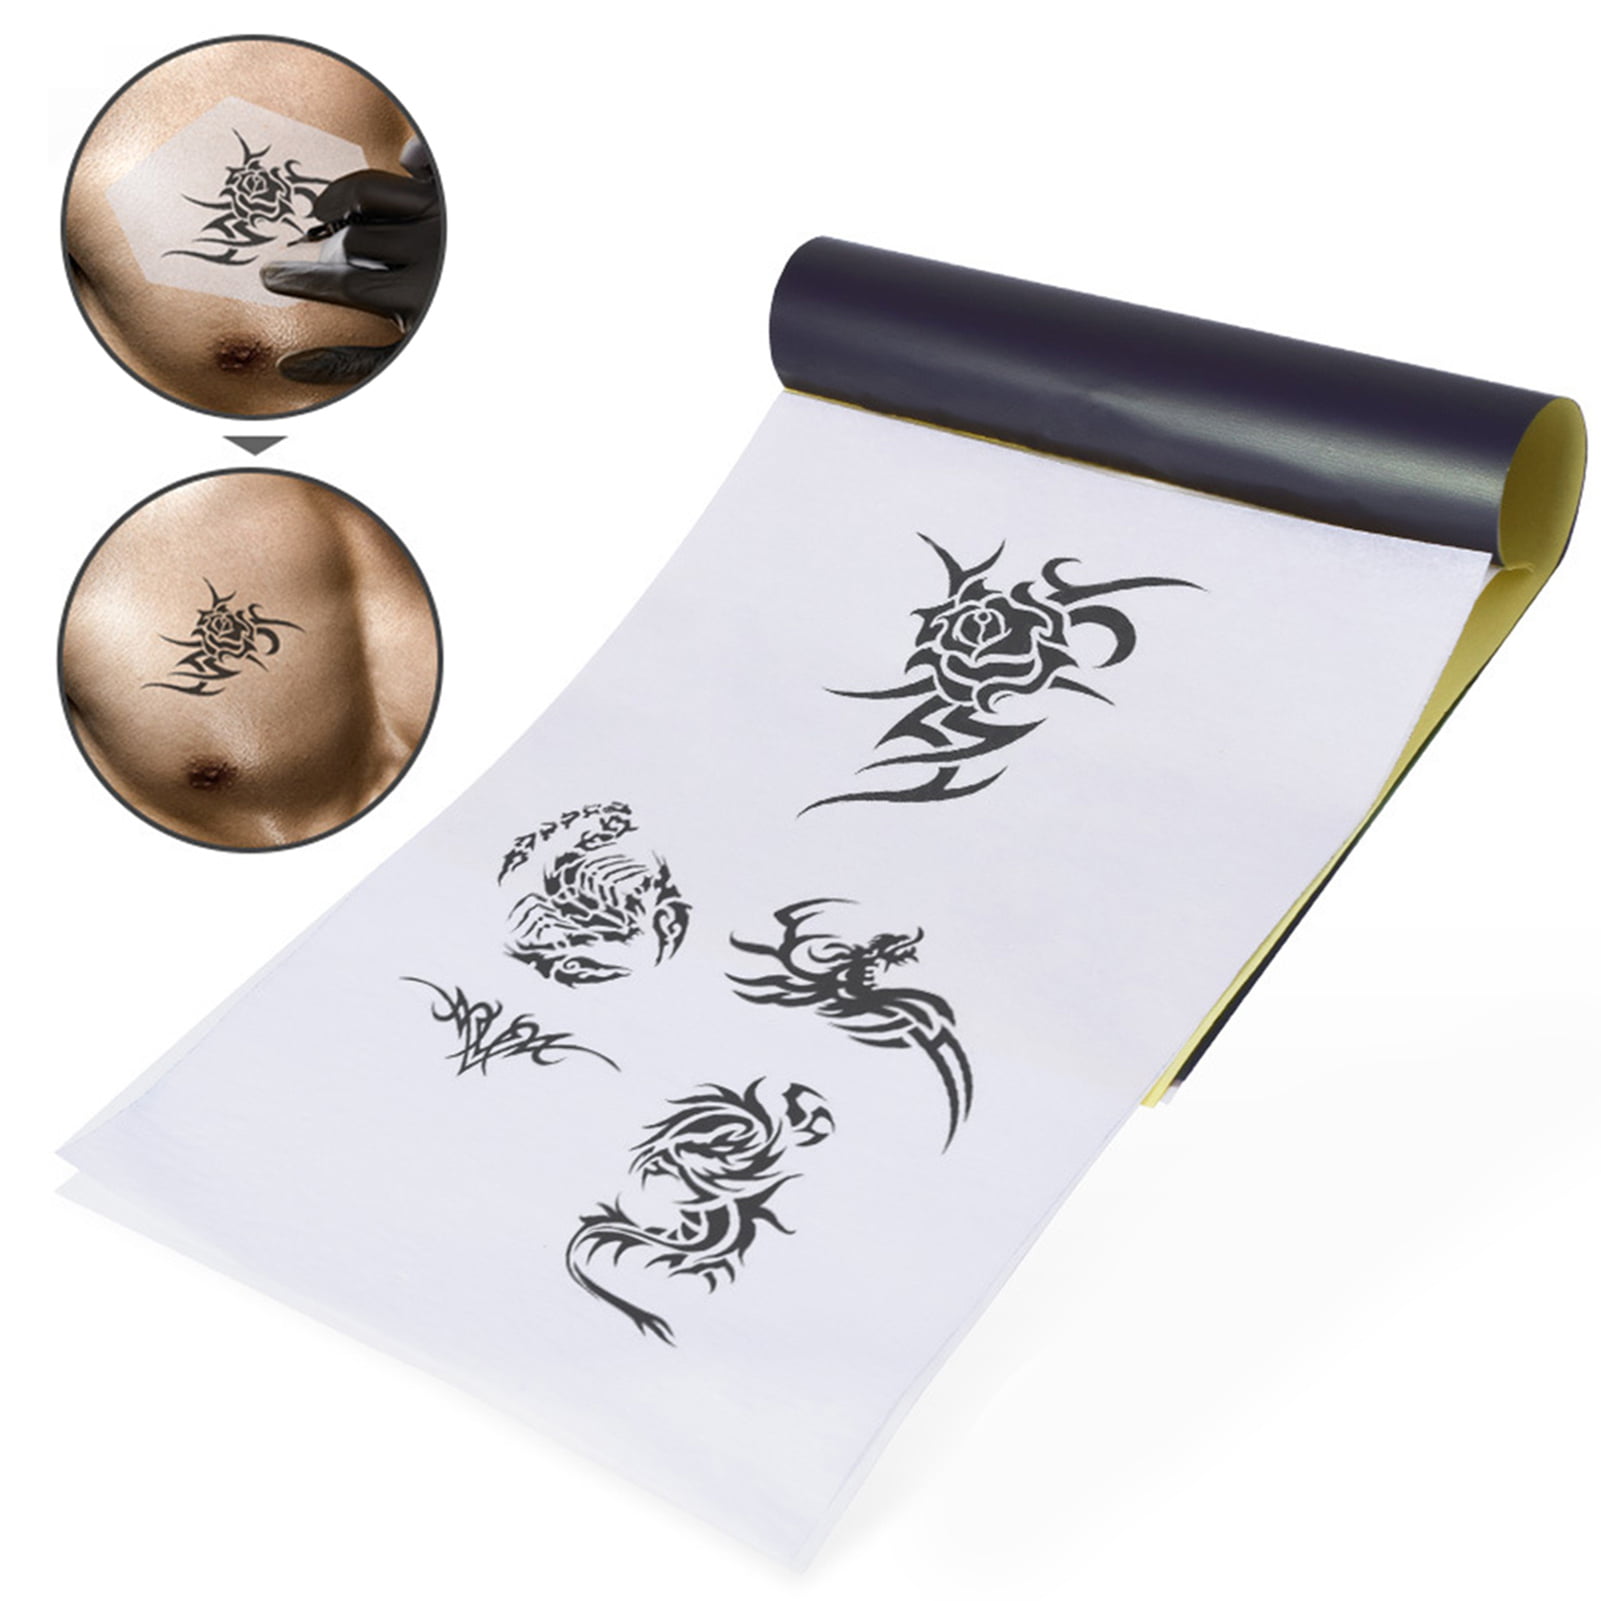 LIUMATE Tattoo Transfer Paper 100 Sheets Tattoo Stencil Transfer Paper for Tattooing 4 Layers Tattoo Thermal Stencil Paper A4 Size DIY Tatt Traci